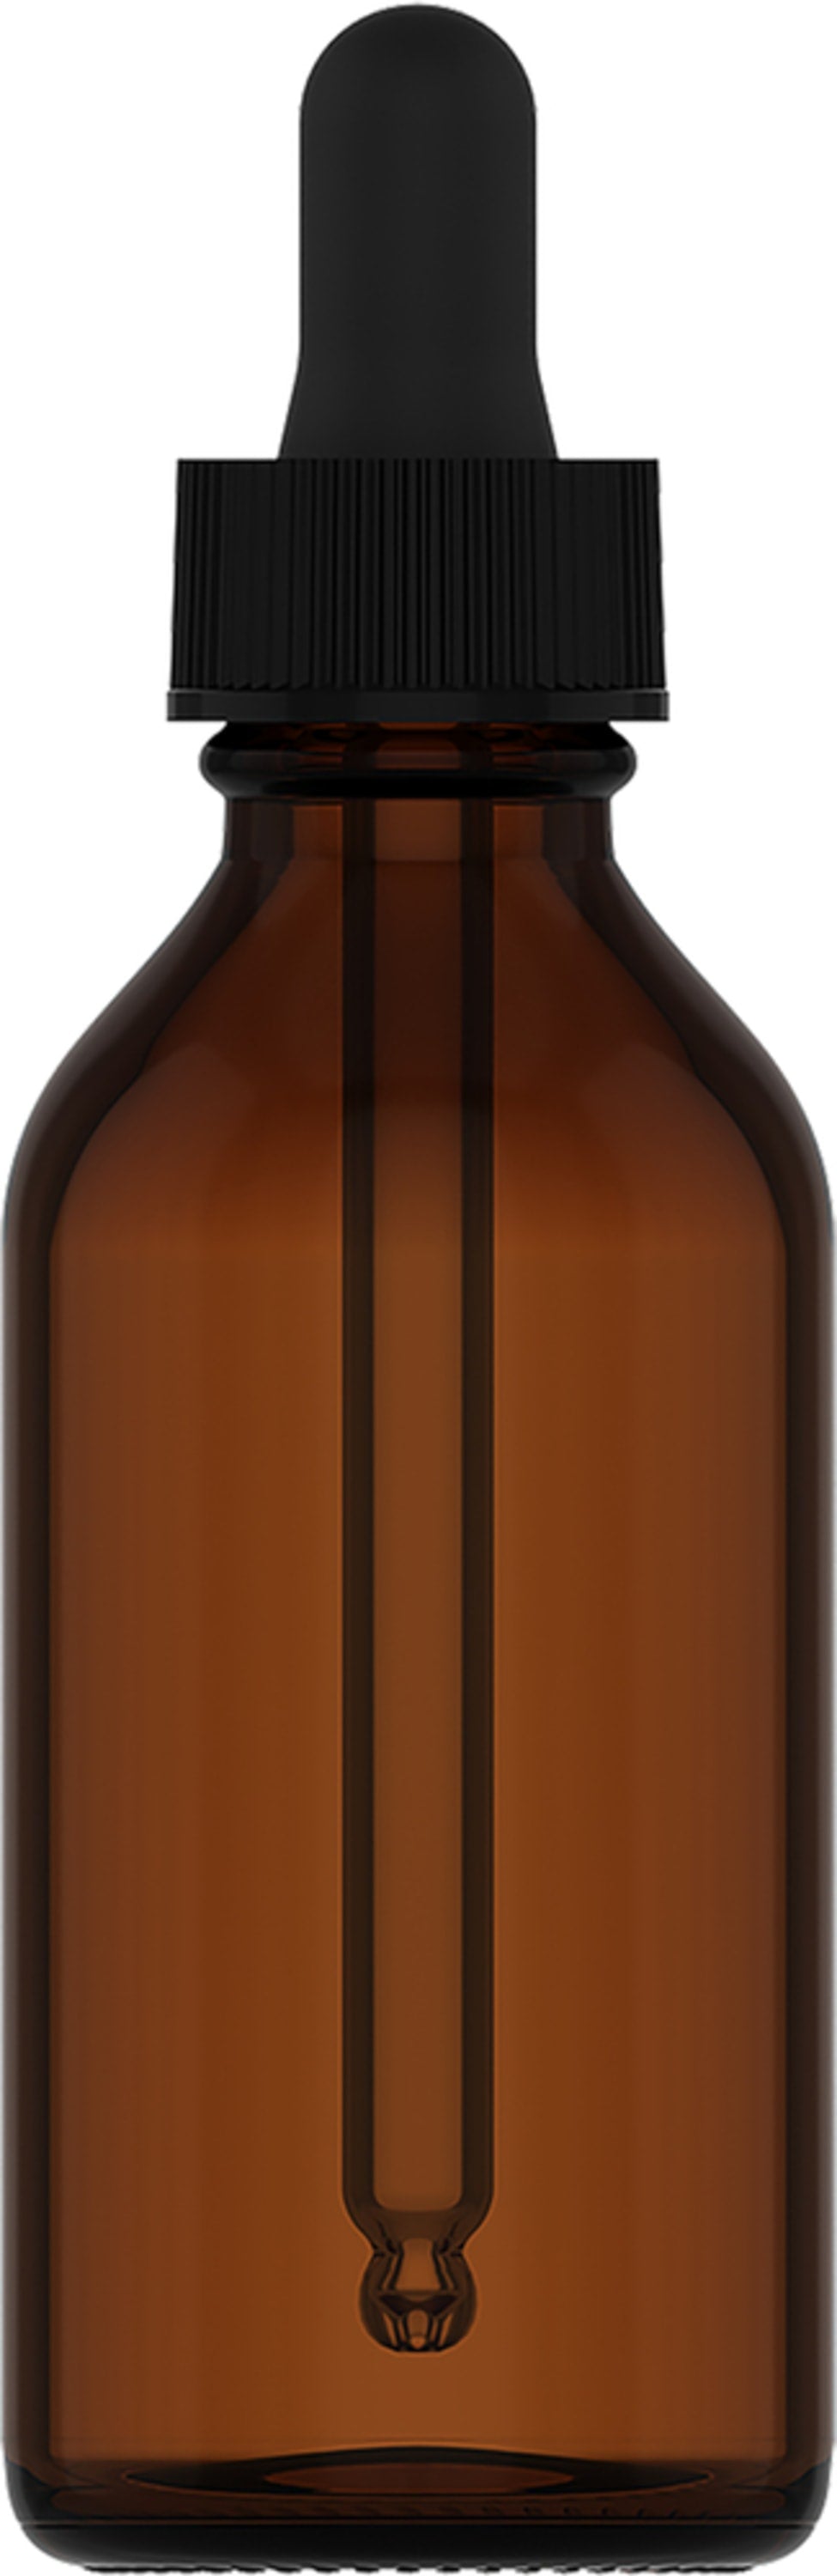 Dropper Bottle, 2 fl oz (59 mL) Glass Amber, Dropper Bottle